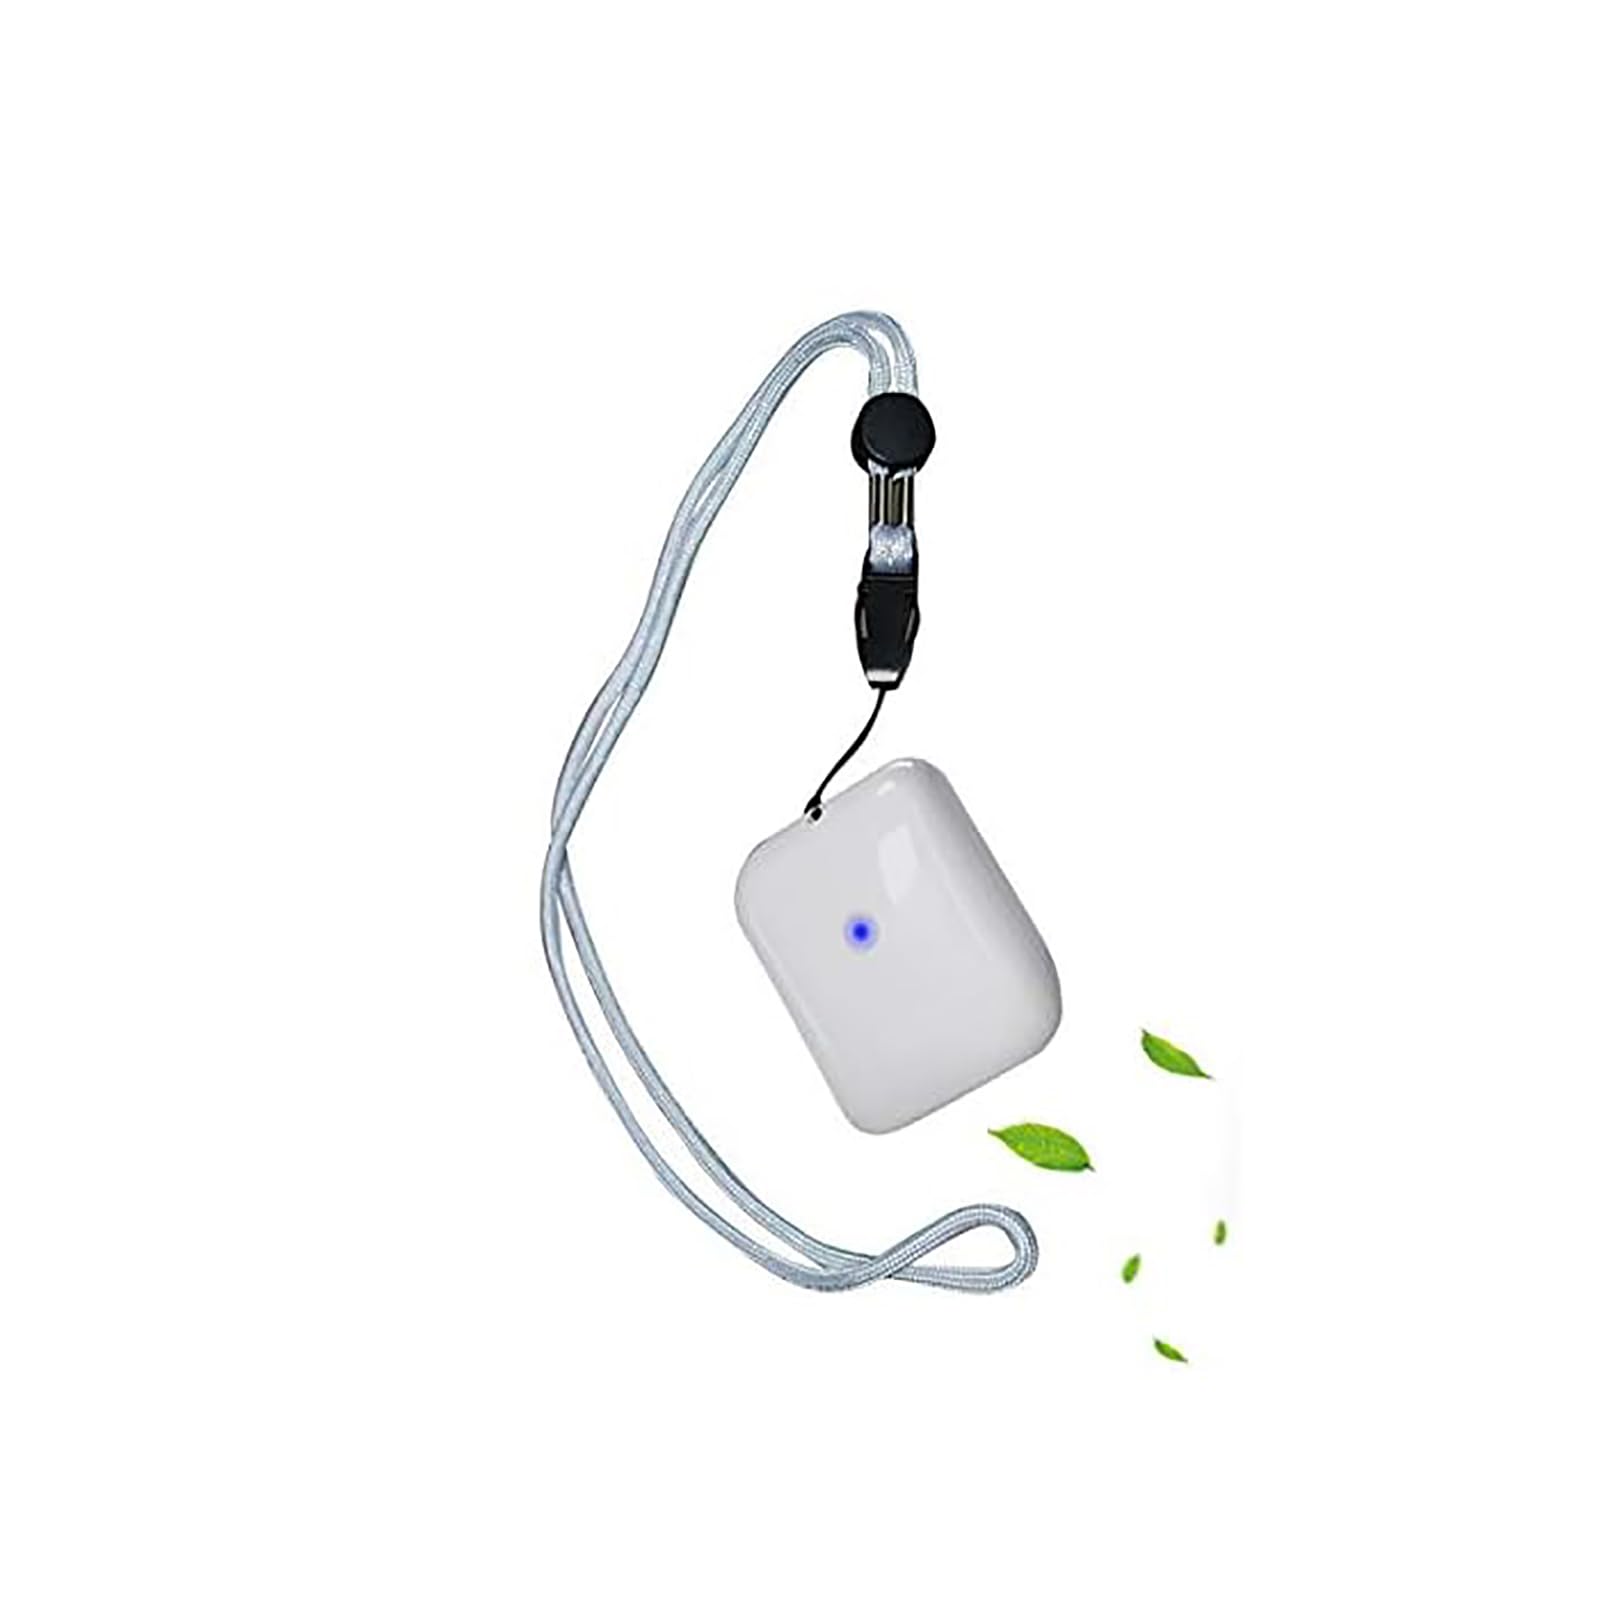 Air purifier, USB wearable necklace ion air purifier Mini wiederaufladbare Ionisator elektronische Maske, entfernen Zigarettenrauch, Bakterien, unerträglichen Geruch (weiß)